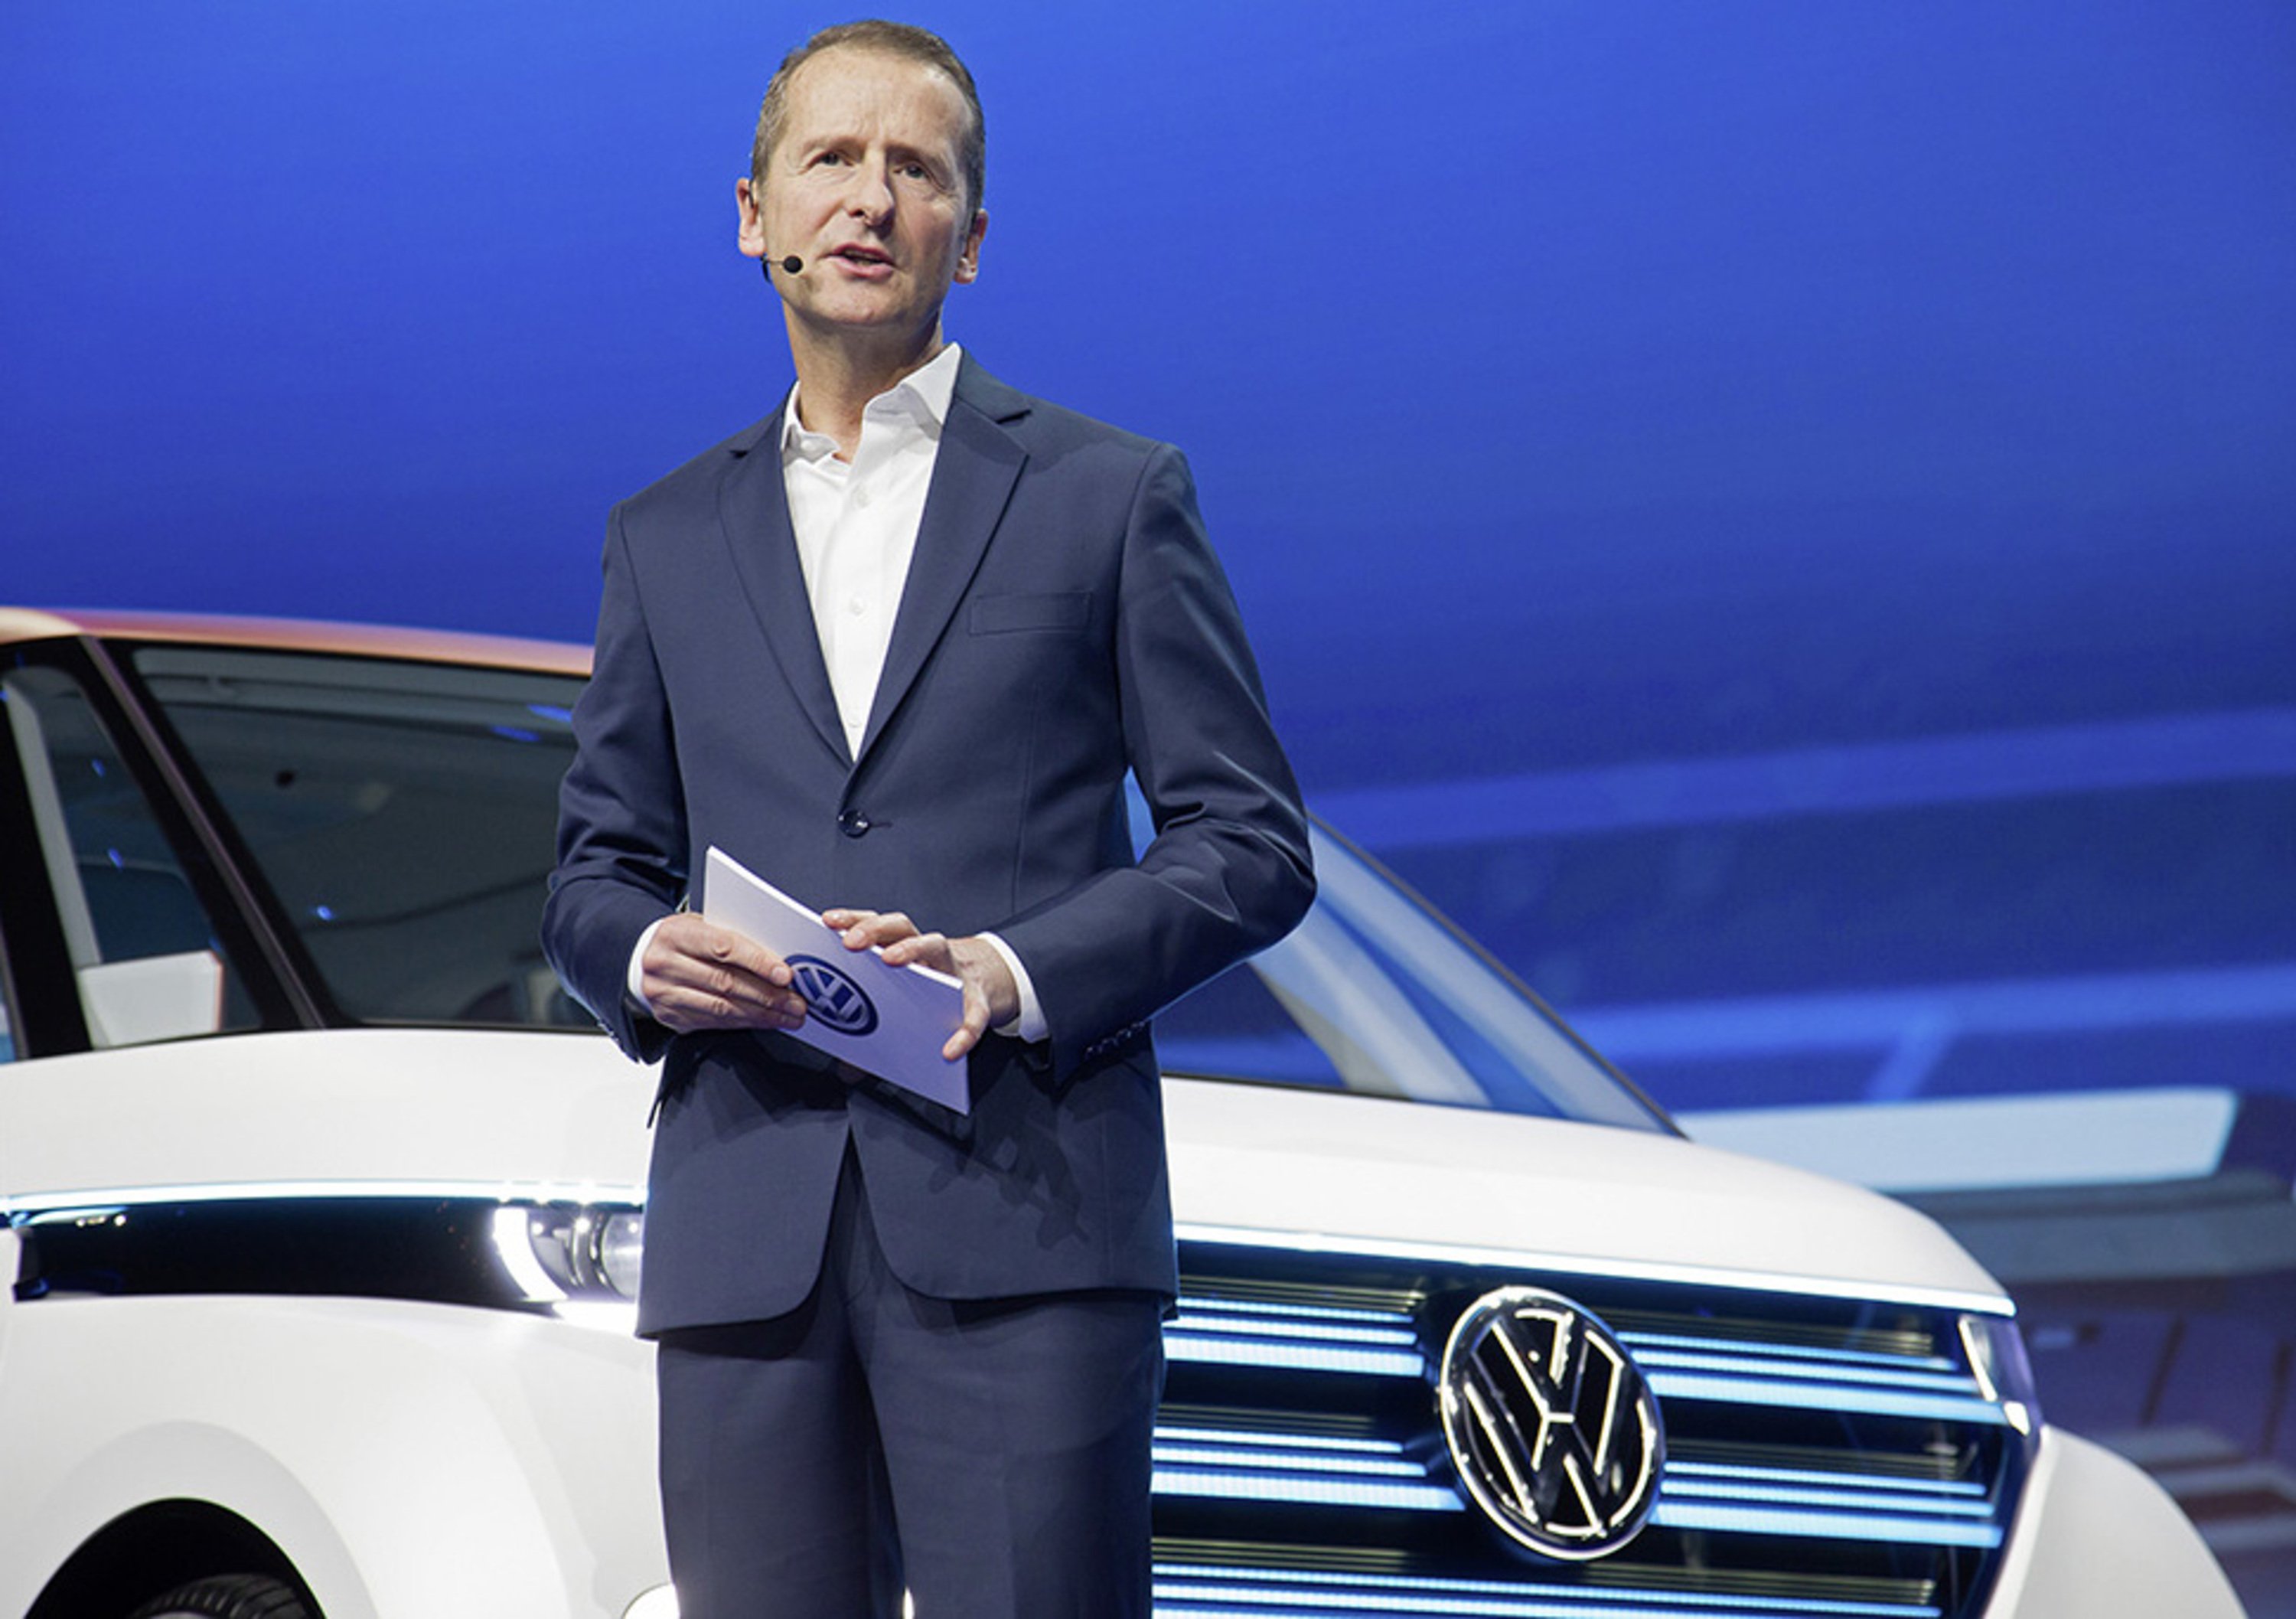 Emissioni, Diess, Volkswagen: &laquo;Il diesel non va messo al bando&raquo;